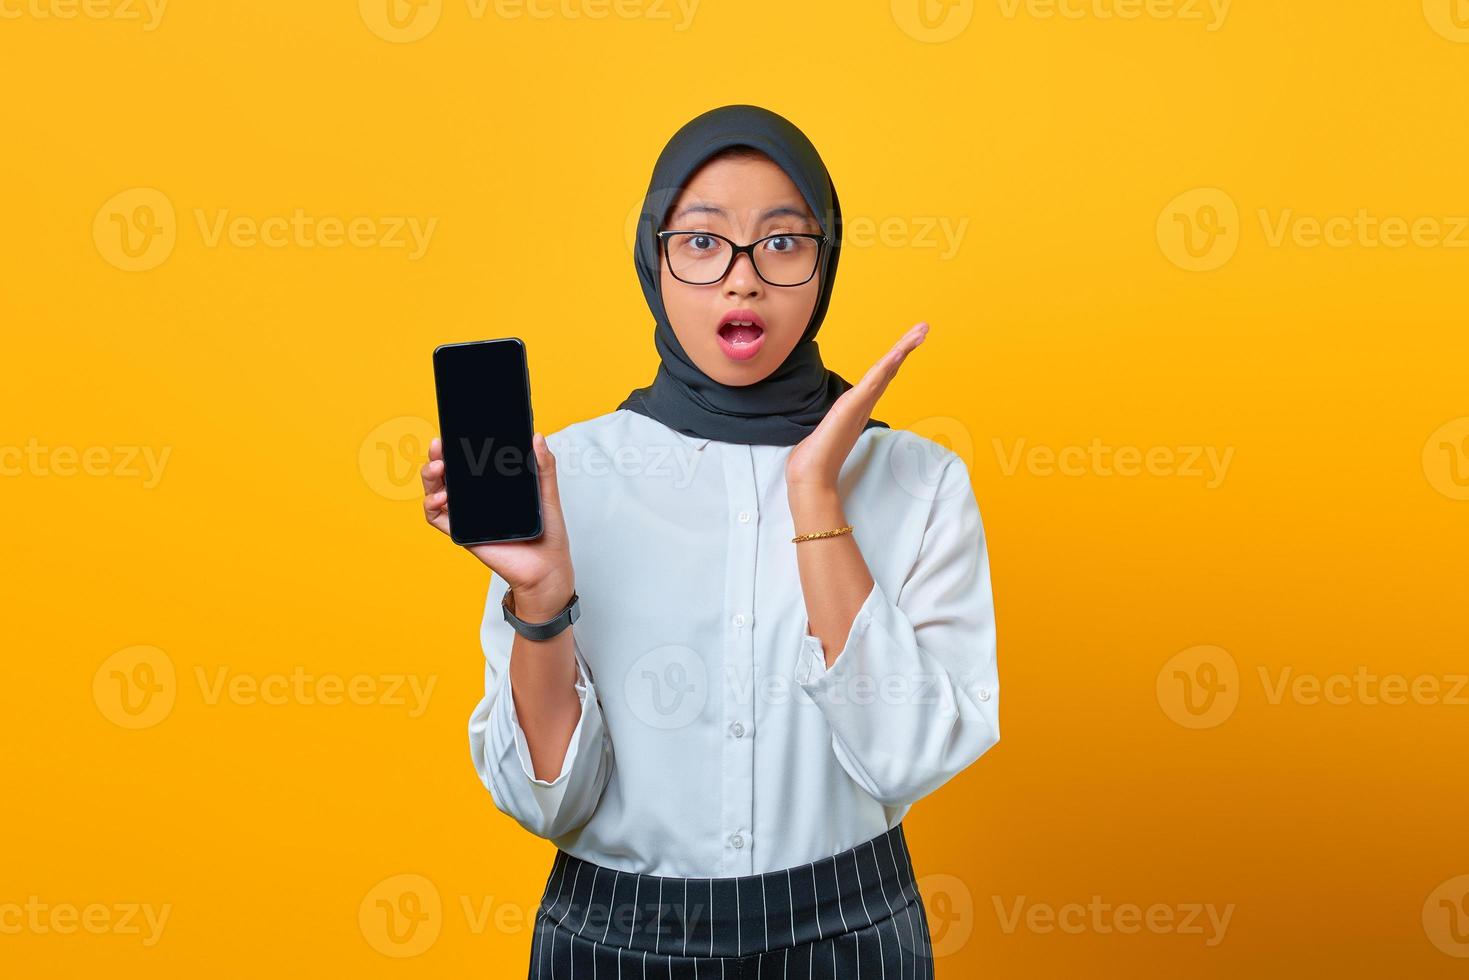 jovem asiática surpresa mostrando a tela em branco do celular isolada sobre fundo amarelo foto